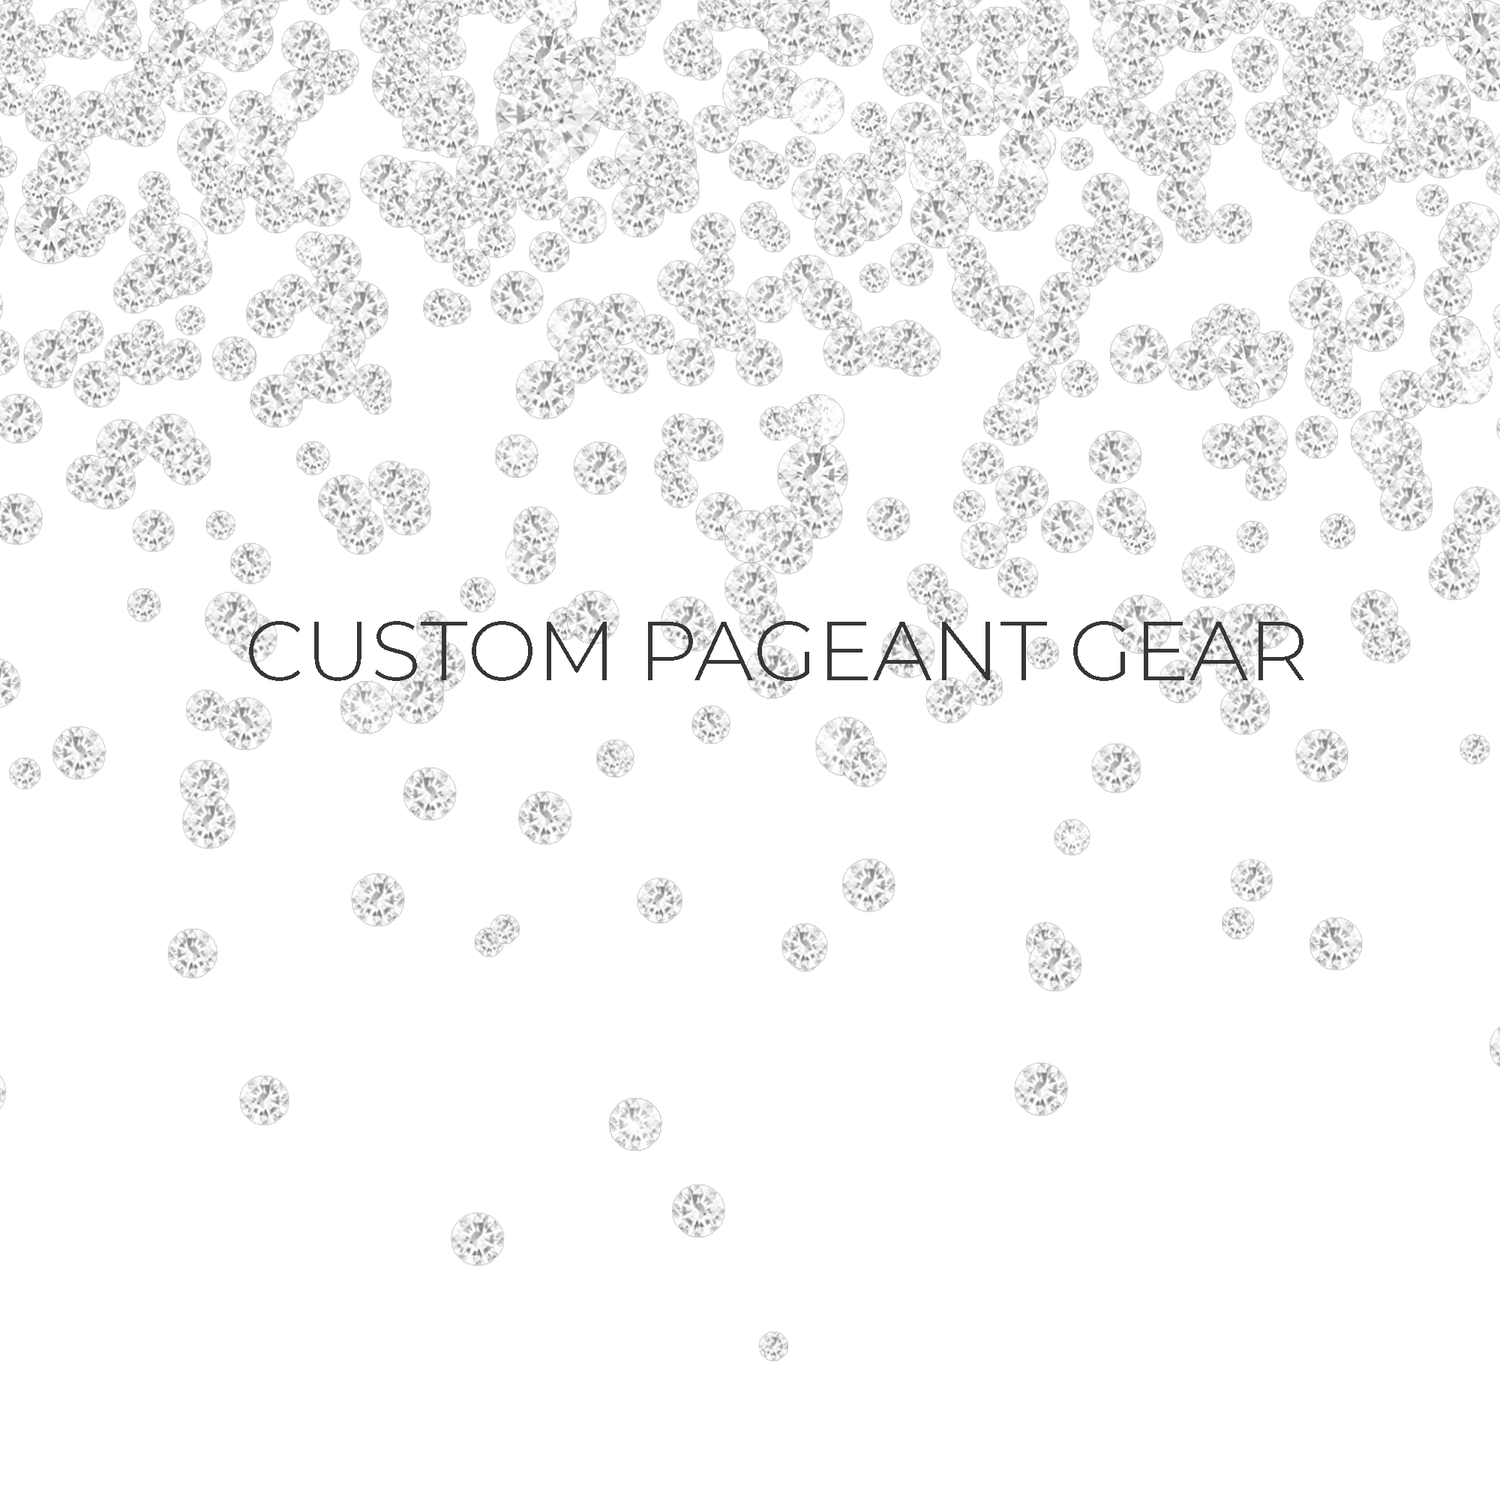 Custom Pageant Gear